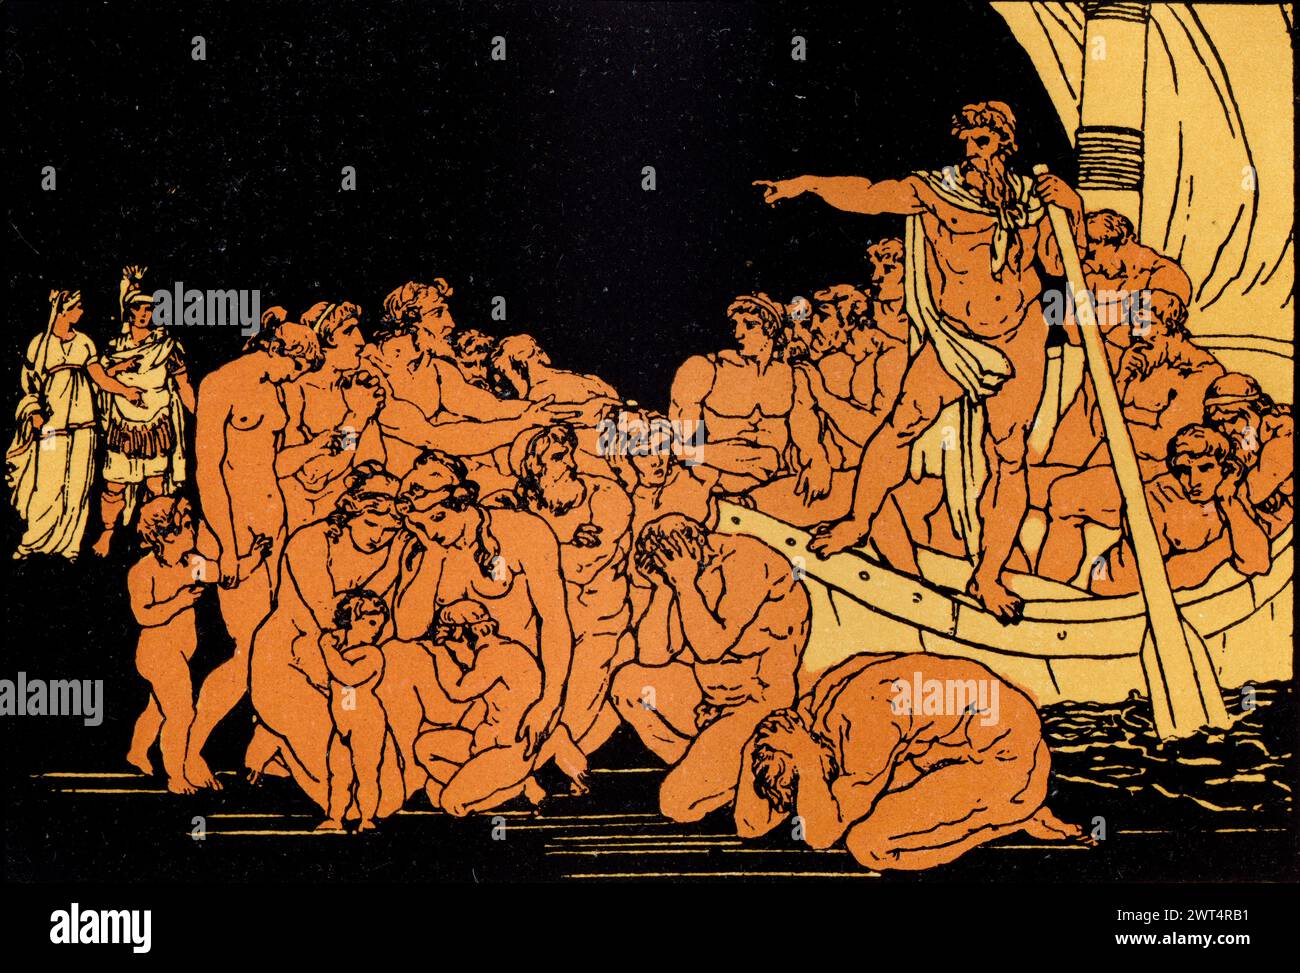 Illustrazione d'epoca mitologia romana, Caronte e i fantasmi, Eneide un poema epico latino che racconta la leggendaria storia di Enea, un troiano fuggito dal Foto Stock